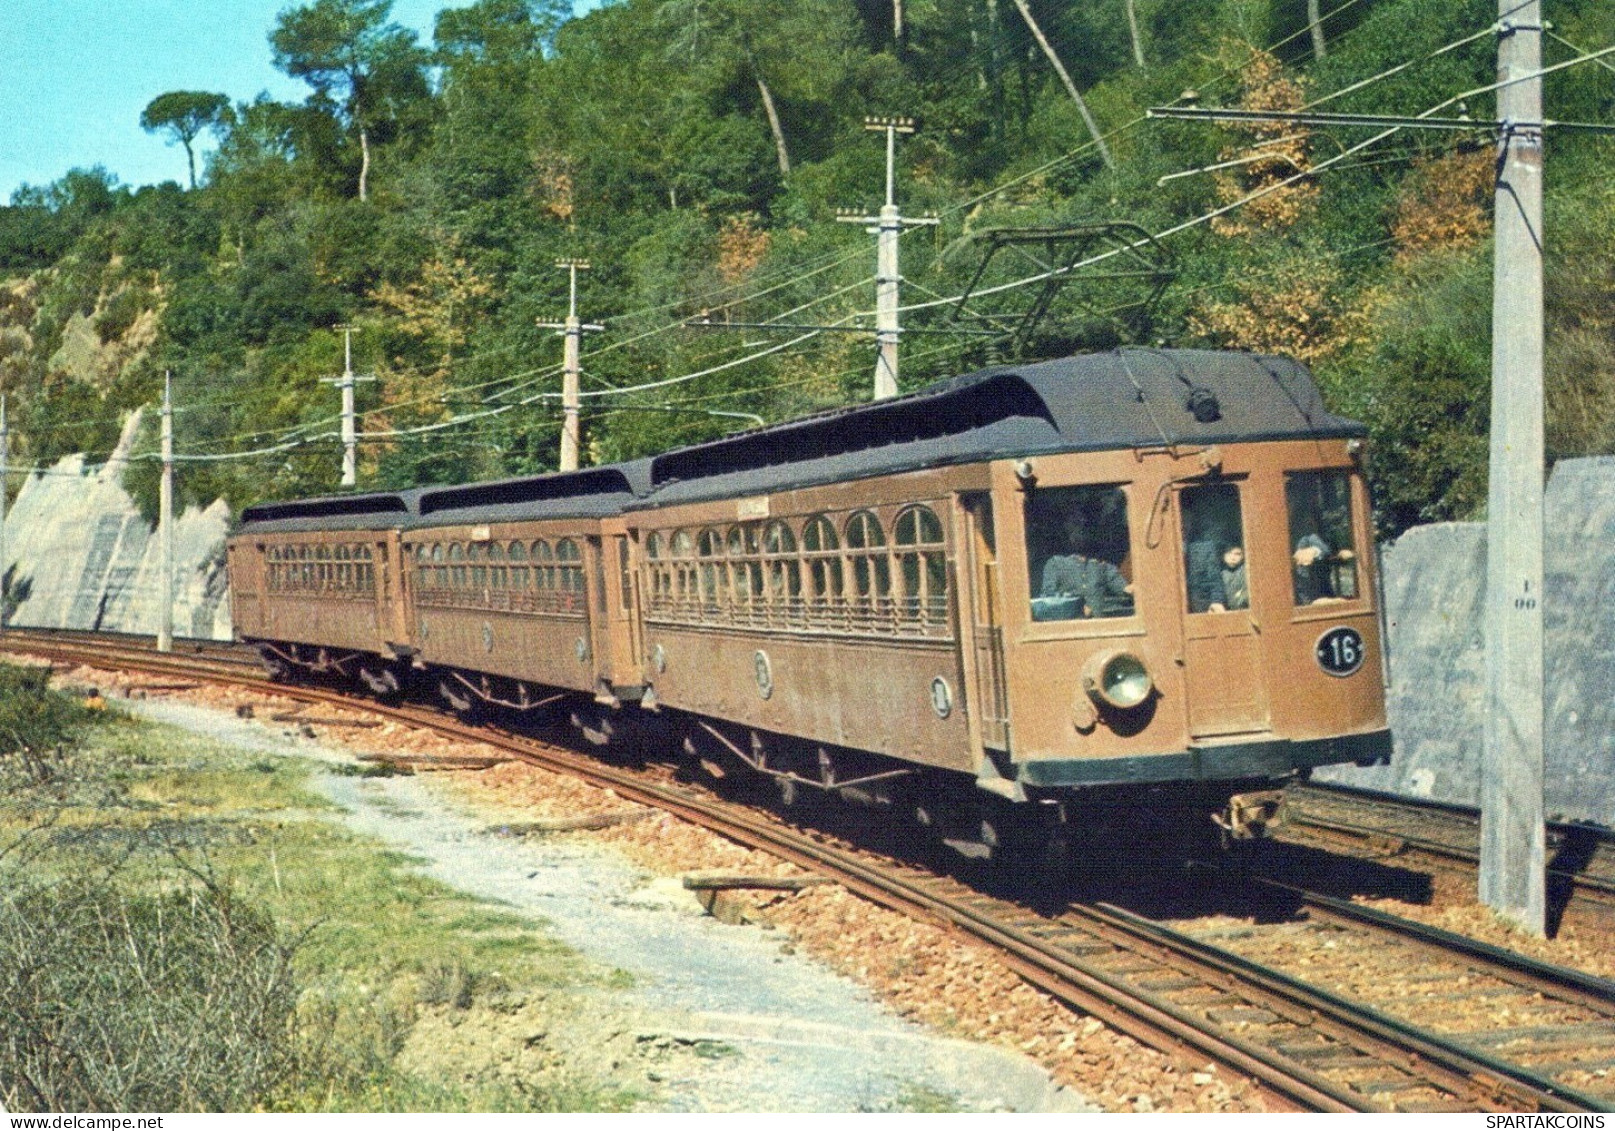 TRAIN RAILWAY Transport Vintage Postcard CPSM #PAA790.A - Treinen